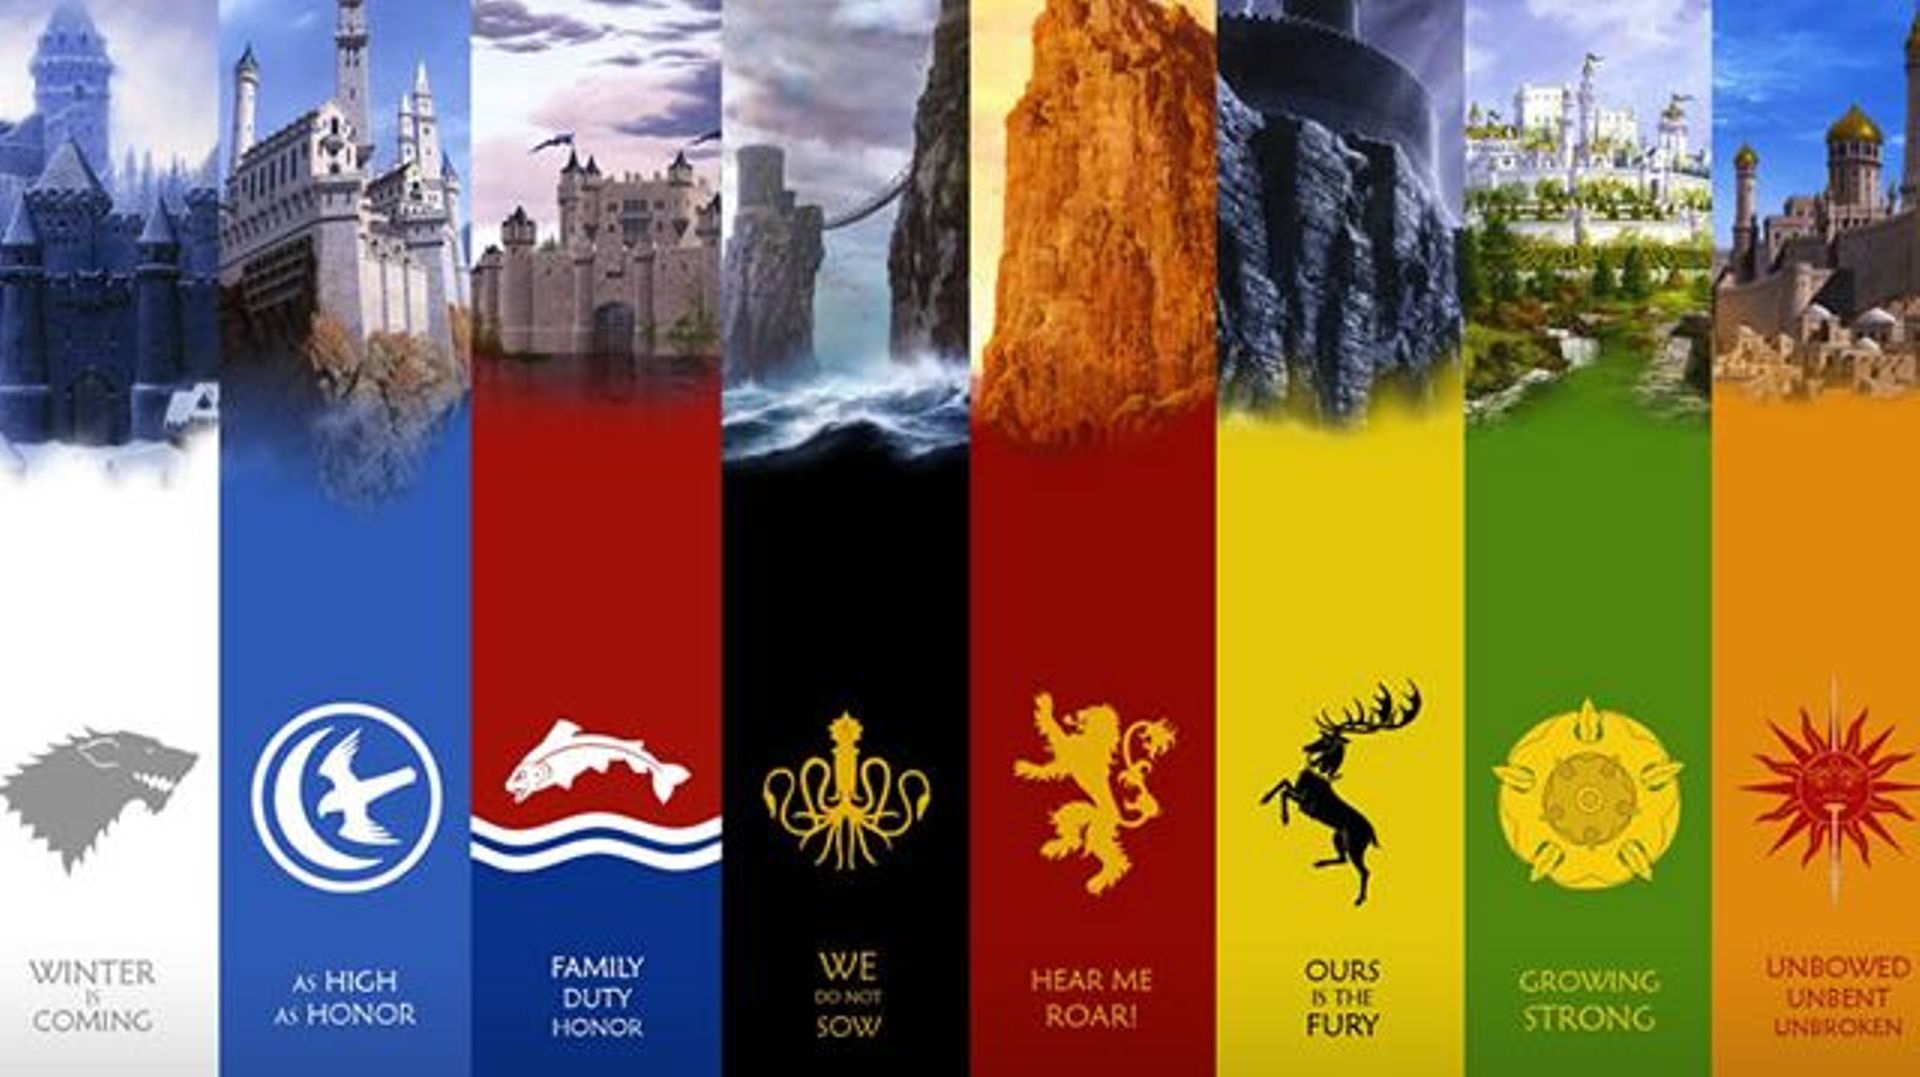 A quelle maison de Game of Thrones appartiendriez-vous?